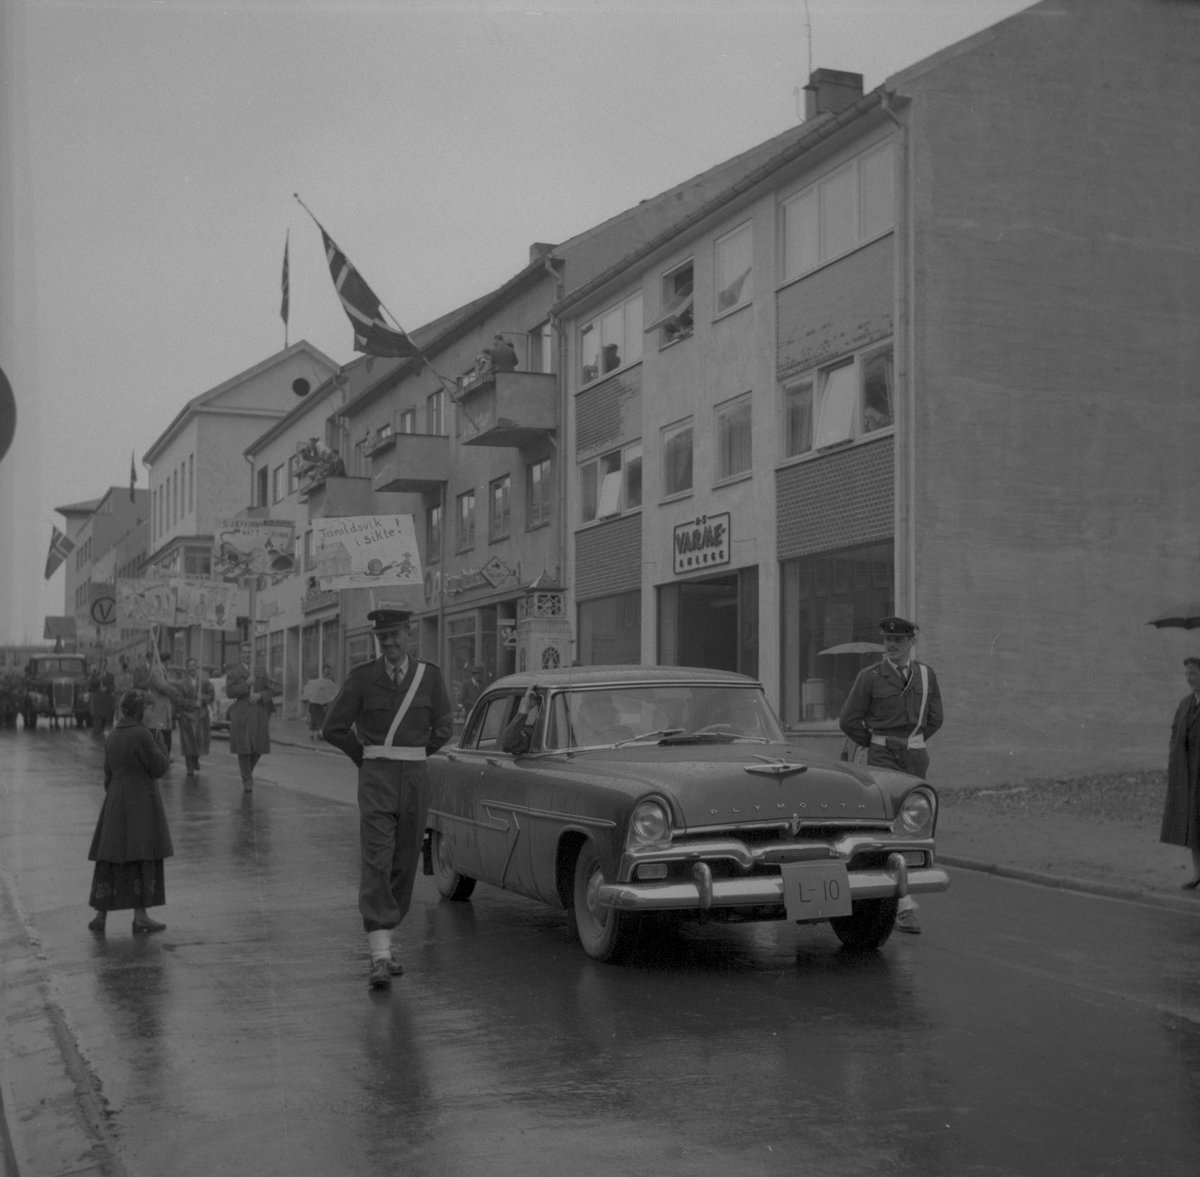 Teknikker opptog 17. mai 1957. Plymouth 1955-56 med militærpolitieskorte